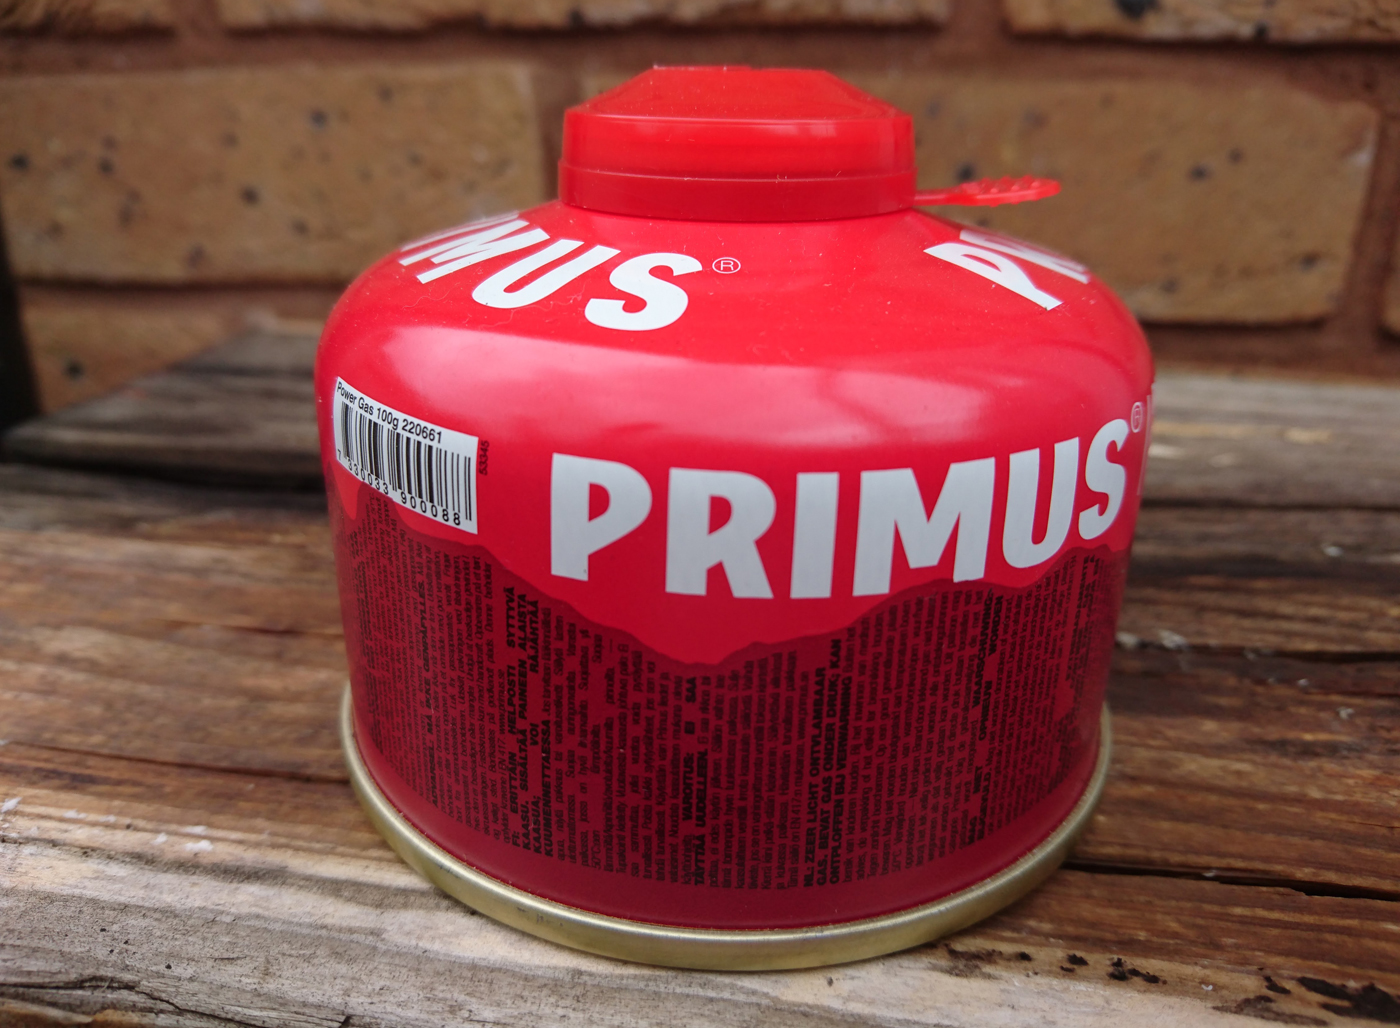 Primus gas